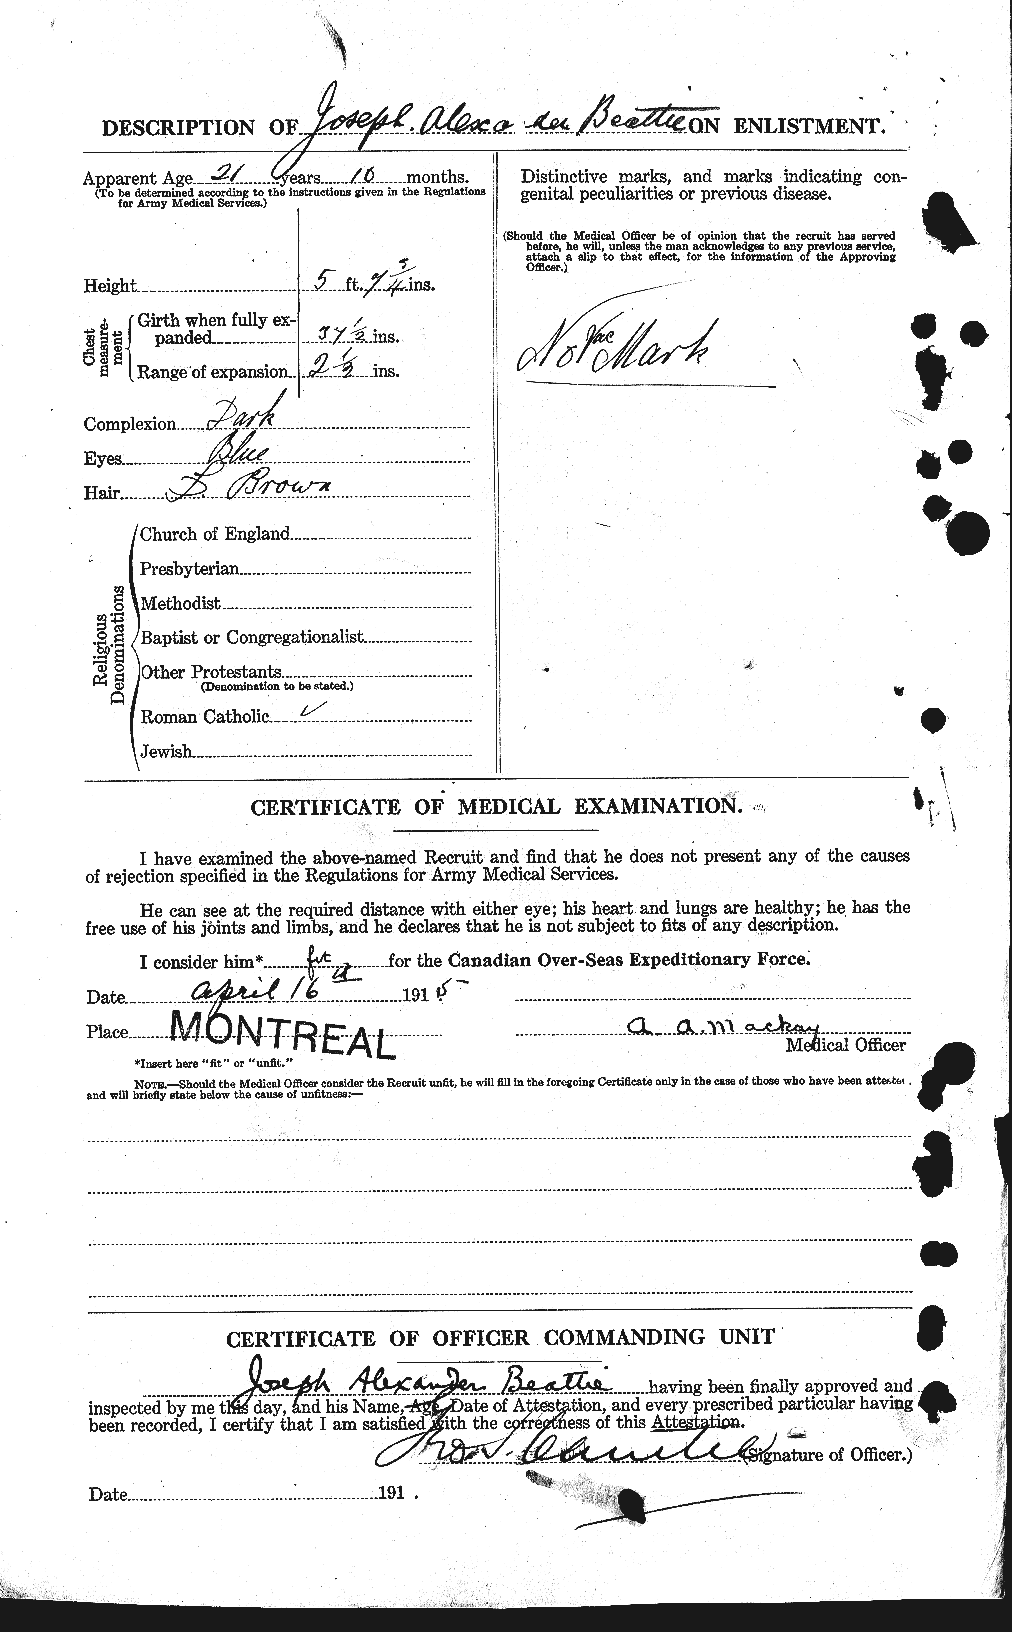 Dossiers du Personnel de la Première Guerre mondiale - CEC 230761b